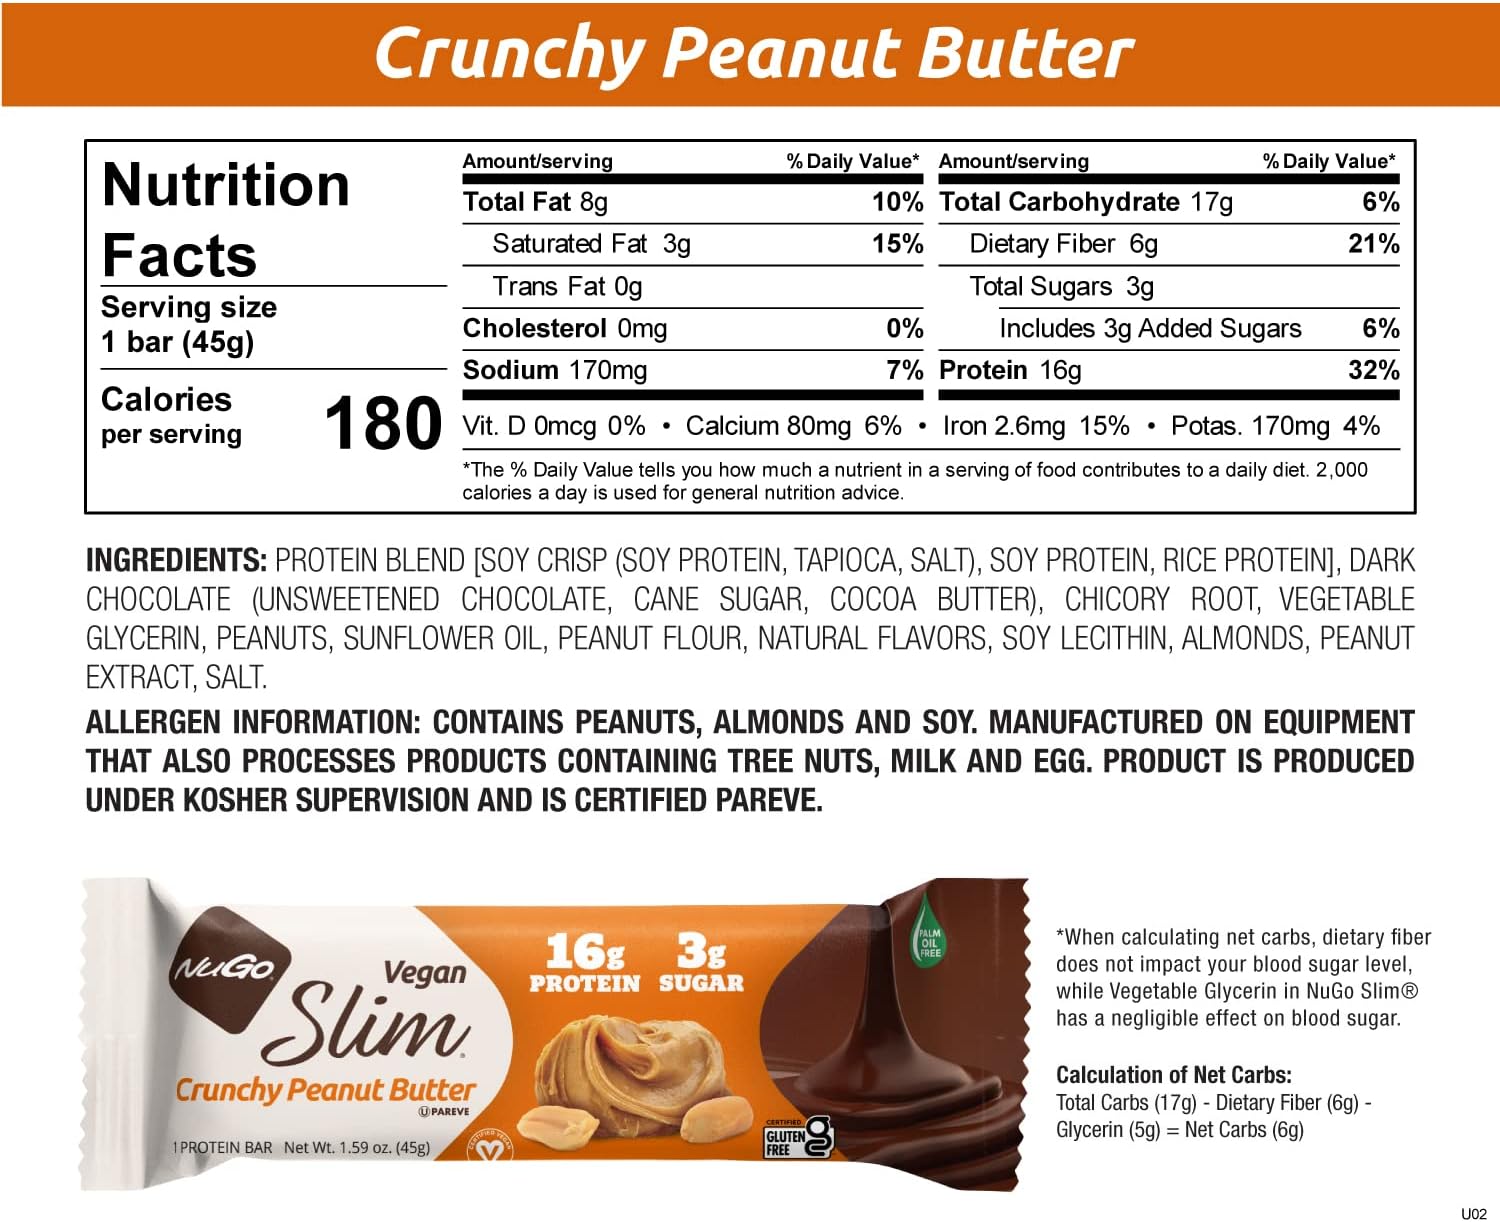 NuGo Slim Dark Chocolate Crunchy Peanut Butter, 17g Vegan Protein, 3g 